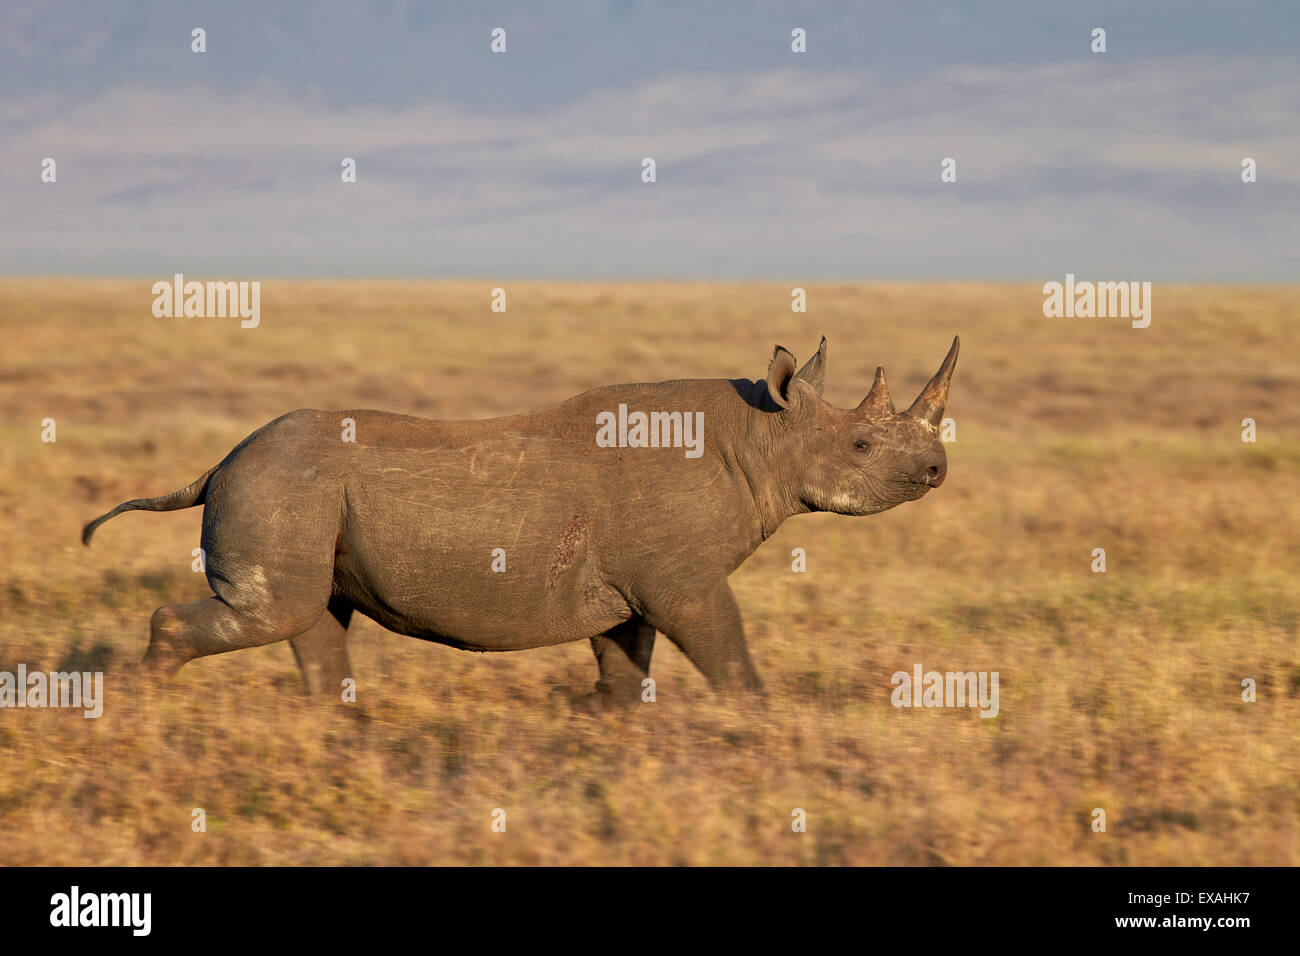 Le rhinocéros noir (hook-lipped rhinoceros) (Diceros bicornis) en cours d'exécution, le cratère du Ngorongoro, en Tanzanie, Afrique de l'Est, l'Afrique Banque D'Images